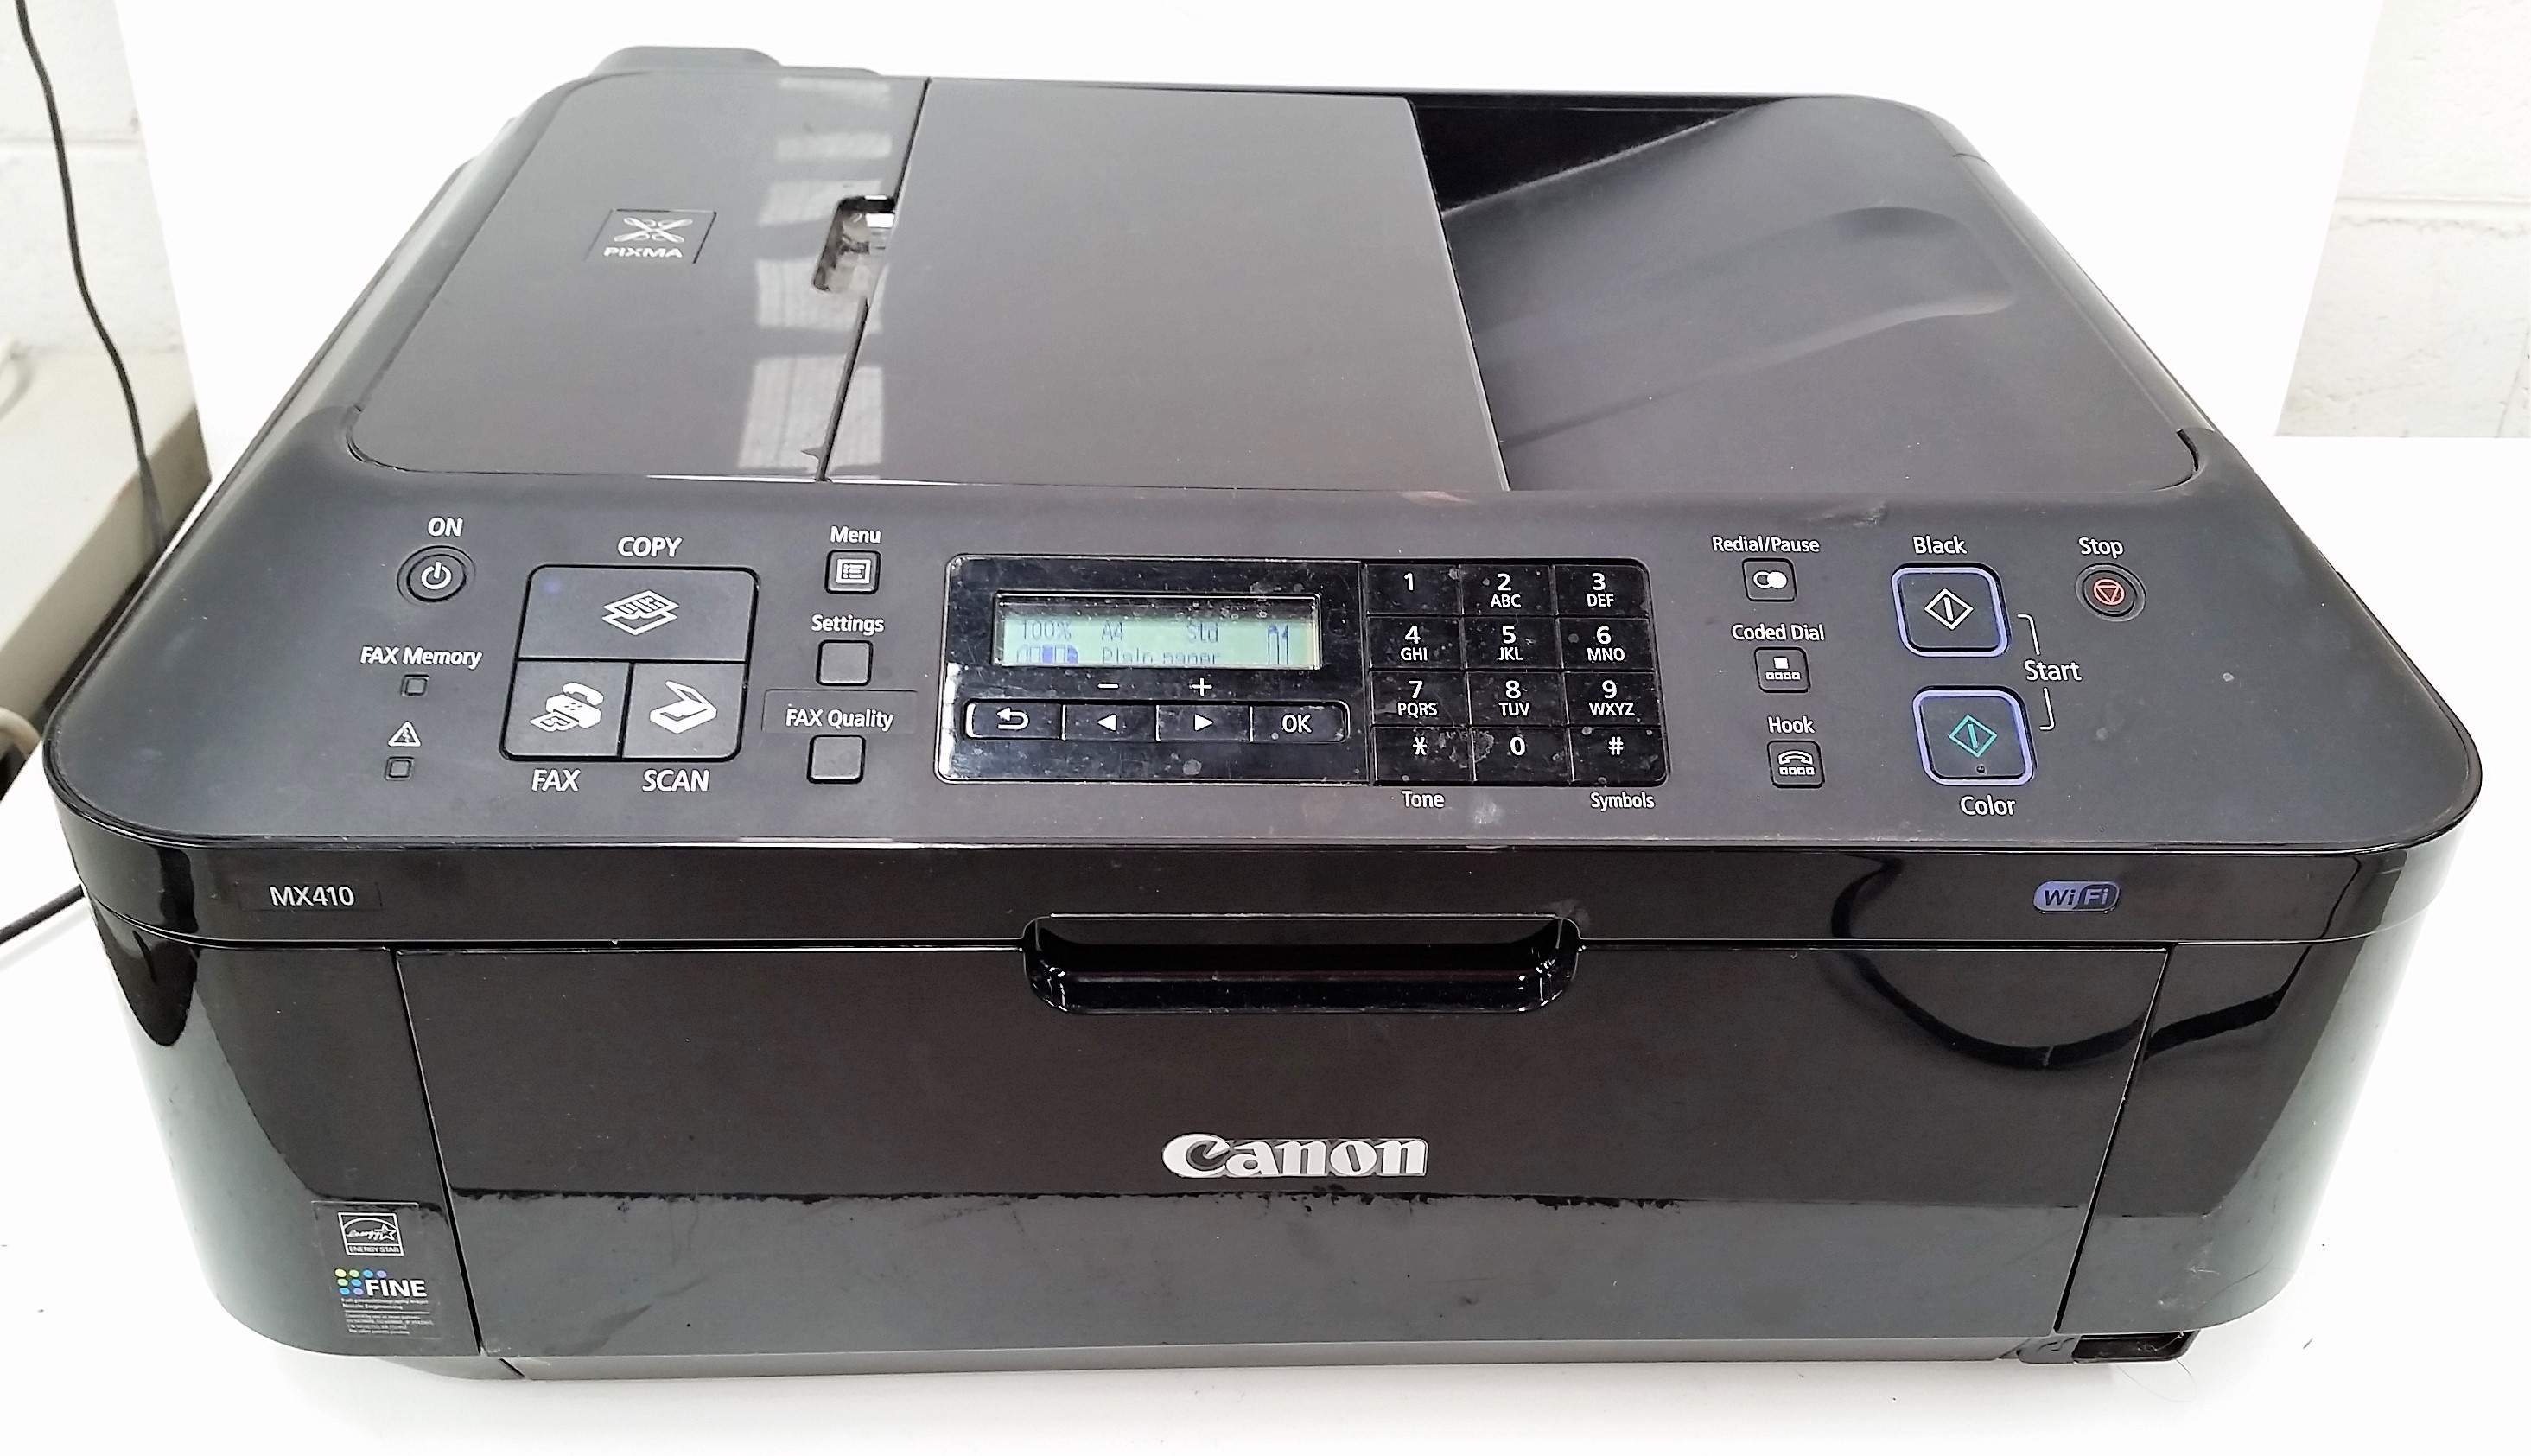 download canon mx410 printer driver for windows